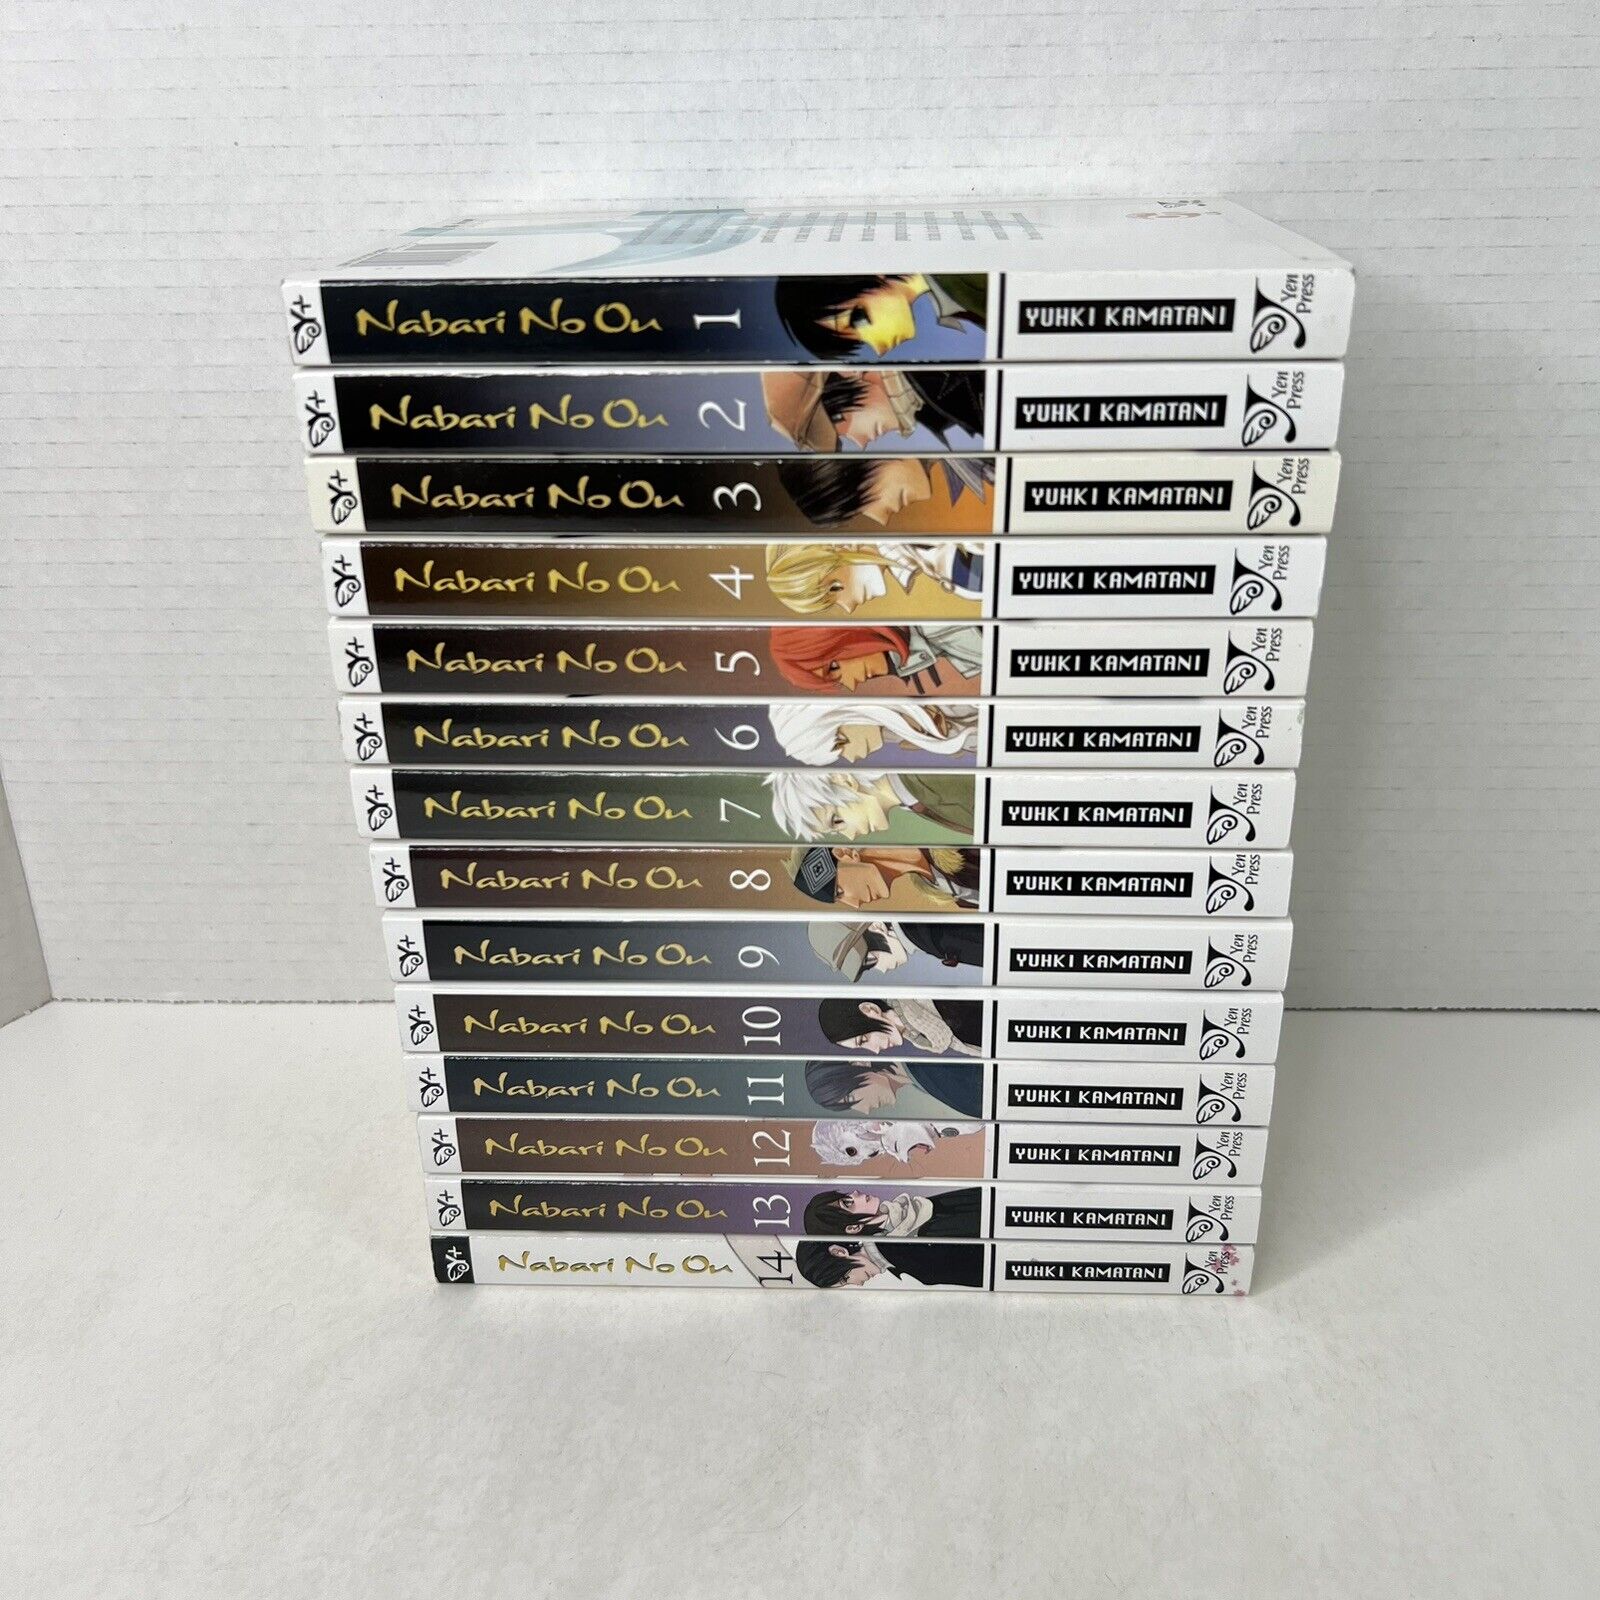 Lot (14) Nabari no Ou English Manga Volumes 1-14 Complete Set by Yuhki Kamatani